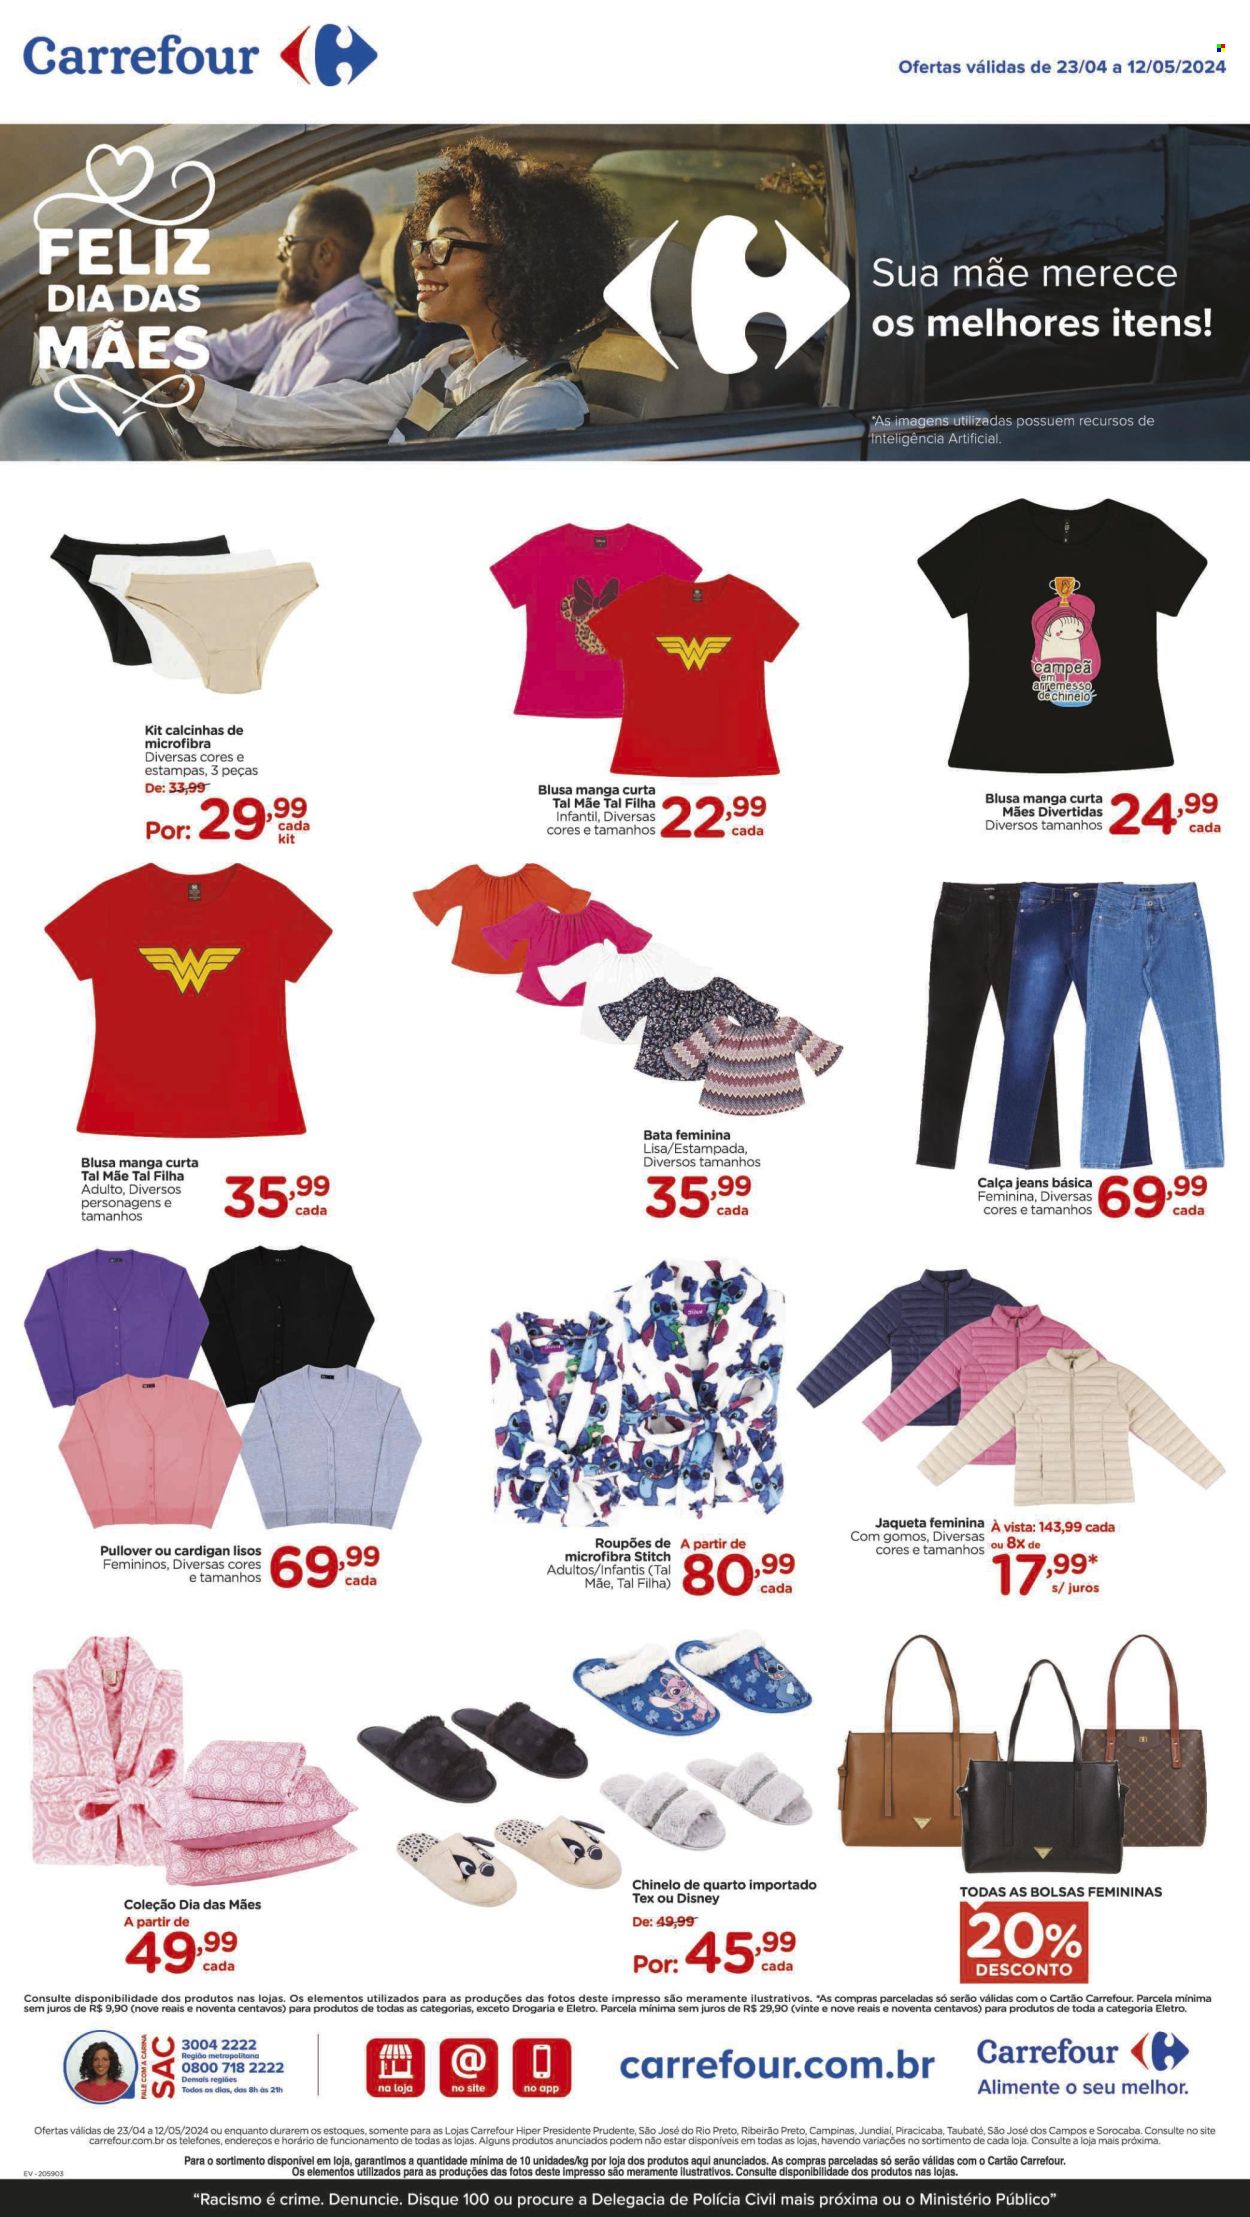 thumbnail - Folheto Carrefour Hiper - 23/04/2024 - 12/05/2024 - Produtos em promoção - Disney, chaqueta, calça, jeans, calça jeans, blusa, cardigan, cuecas, chinelo. Página 8.